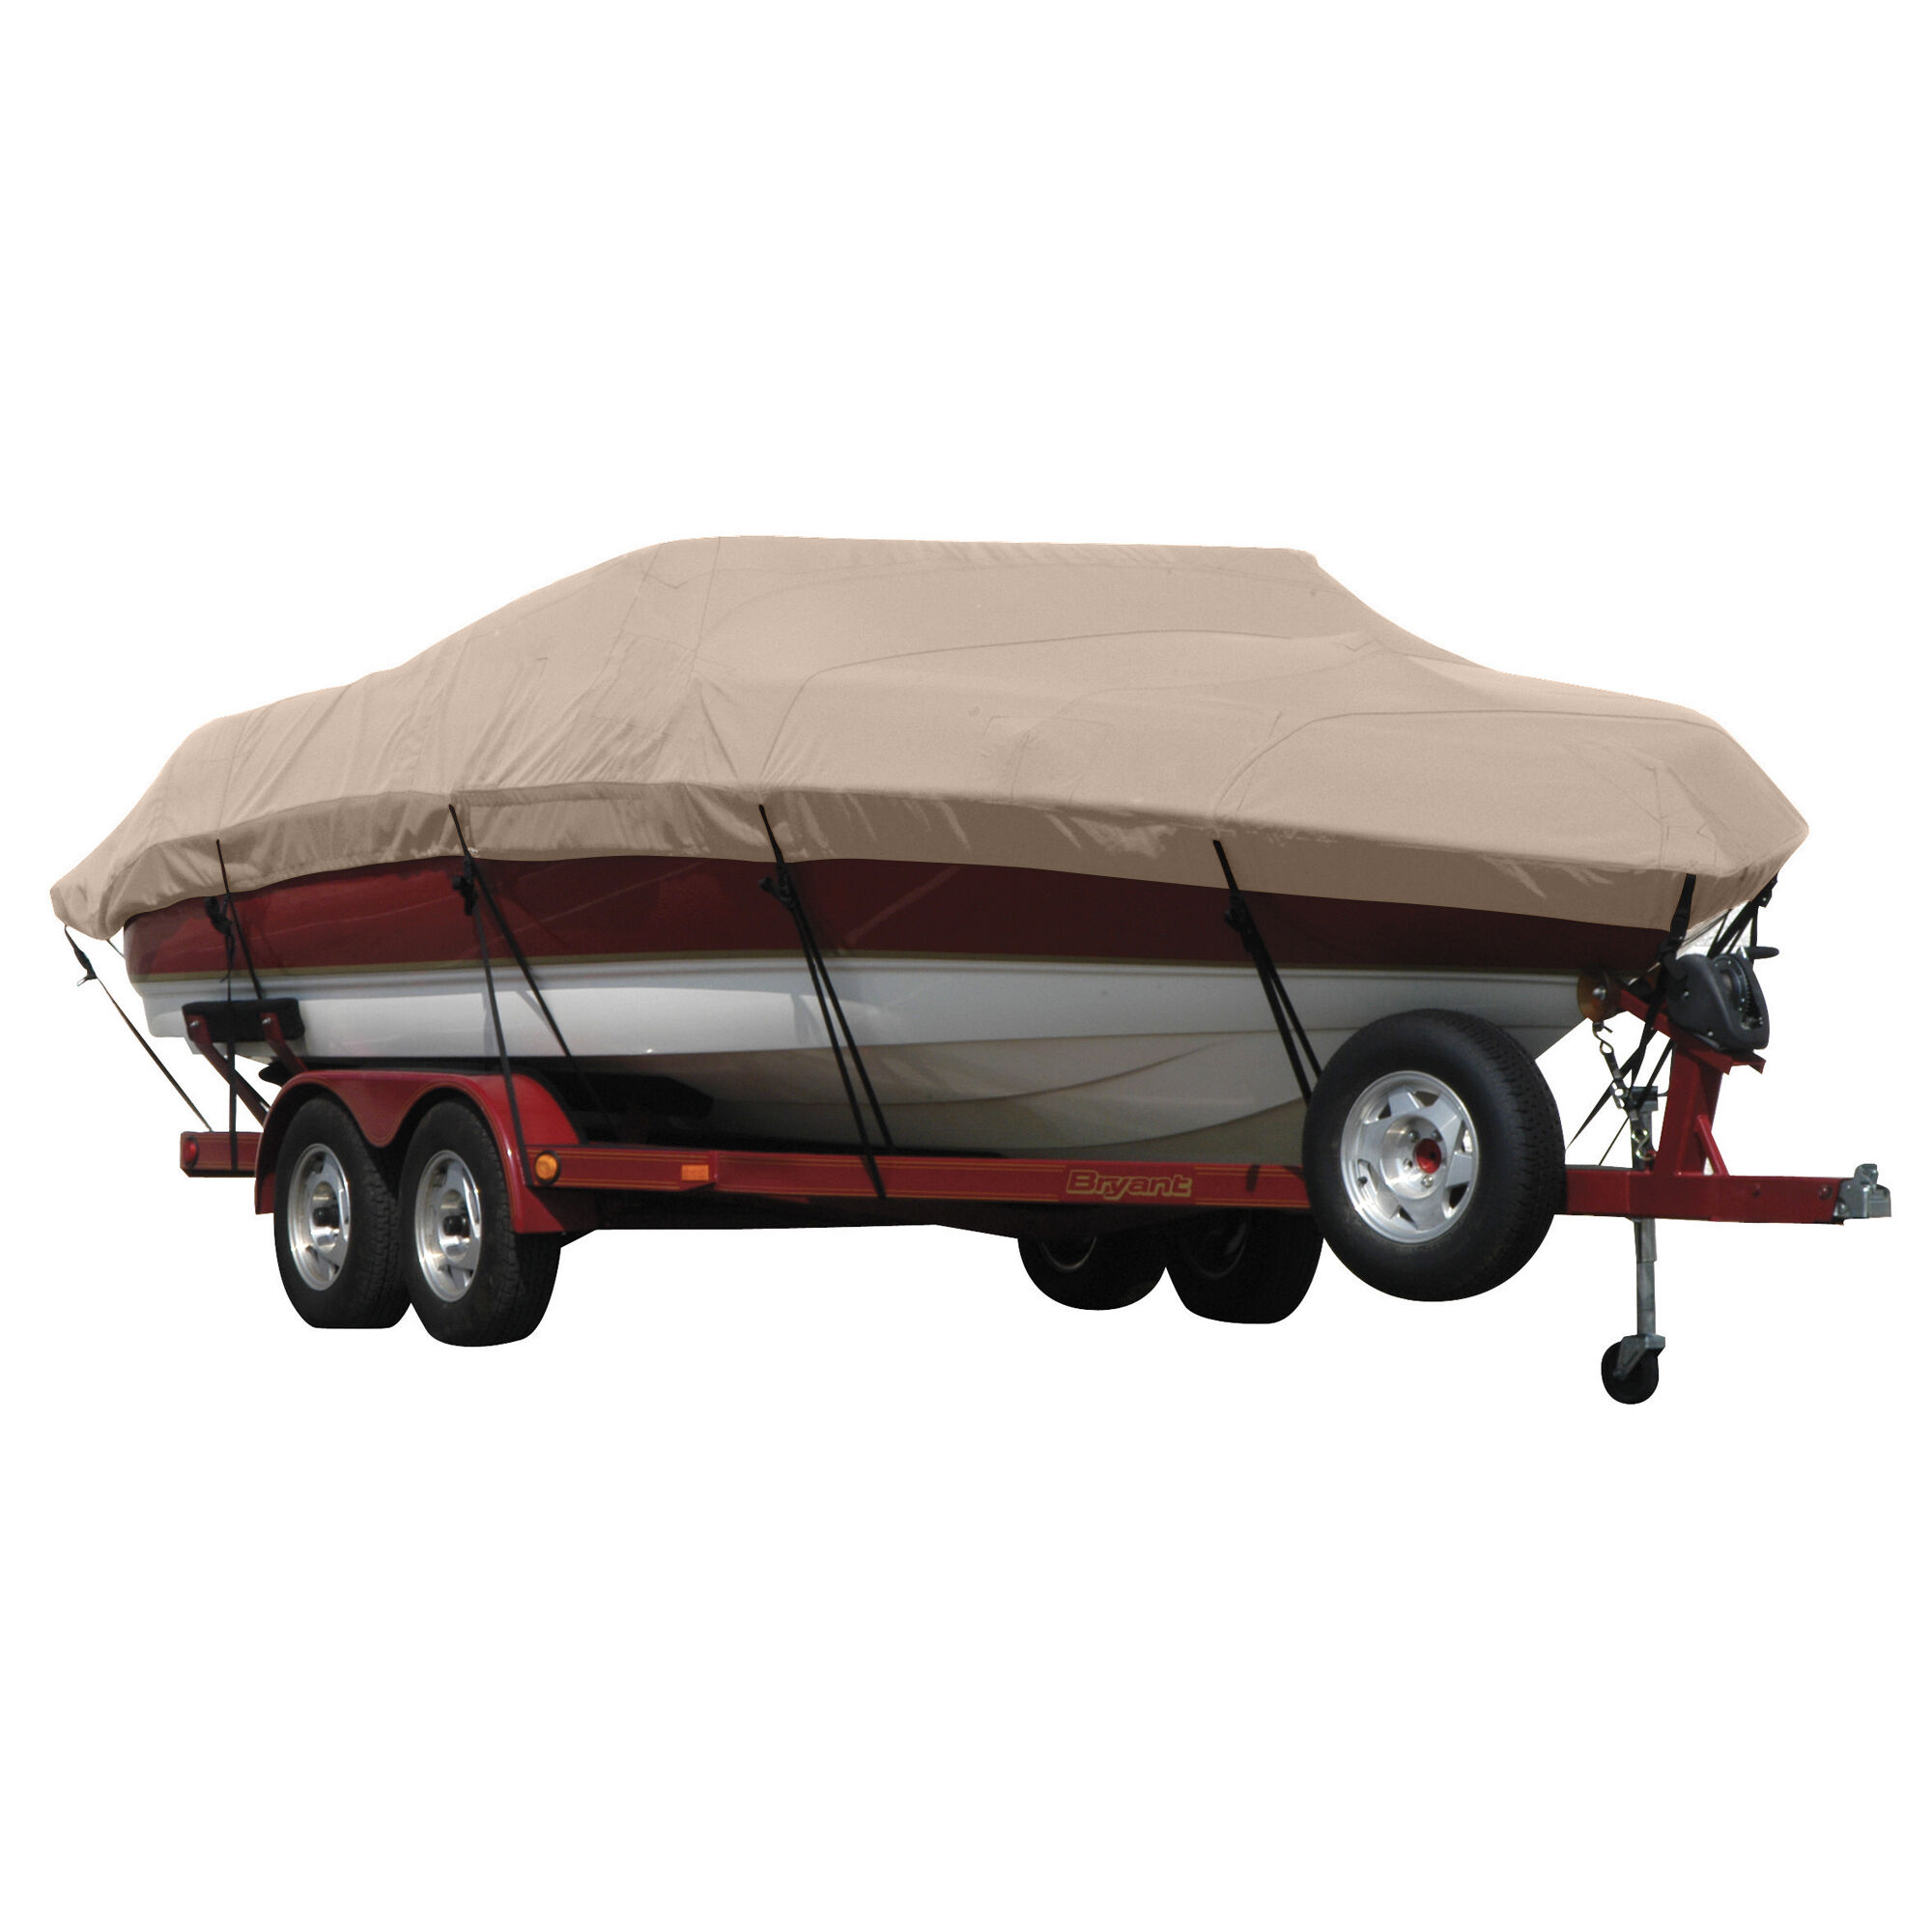 Covermate Exact Fit Sunbrella Boat Cover for Seaswirl Striper 2150 Striper 2150 Walkaround Hard Top I/O. Linnen in Linen